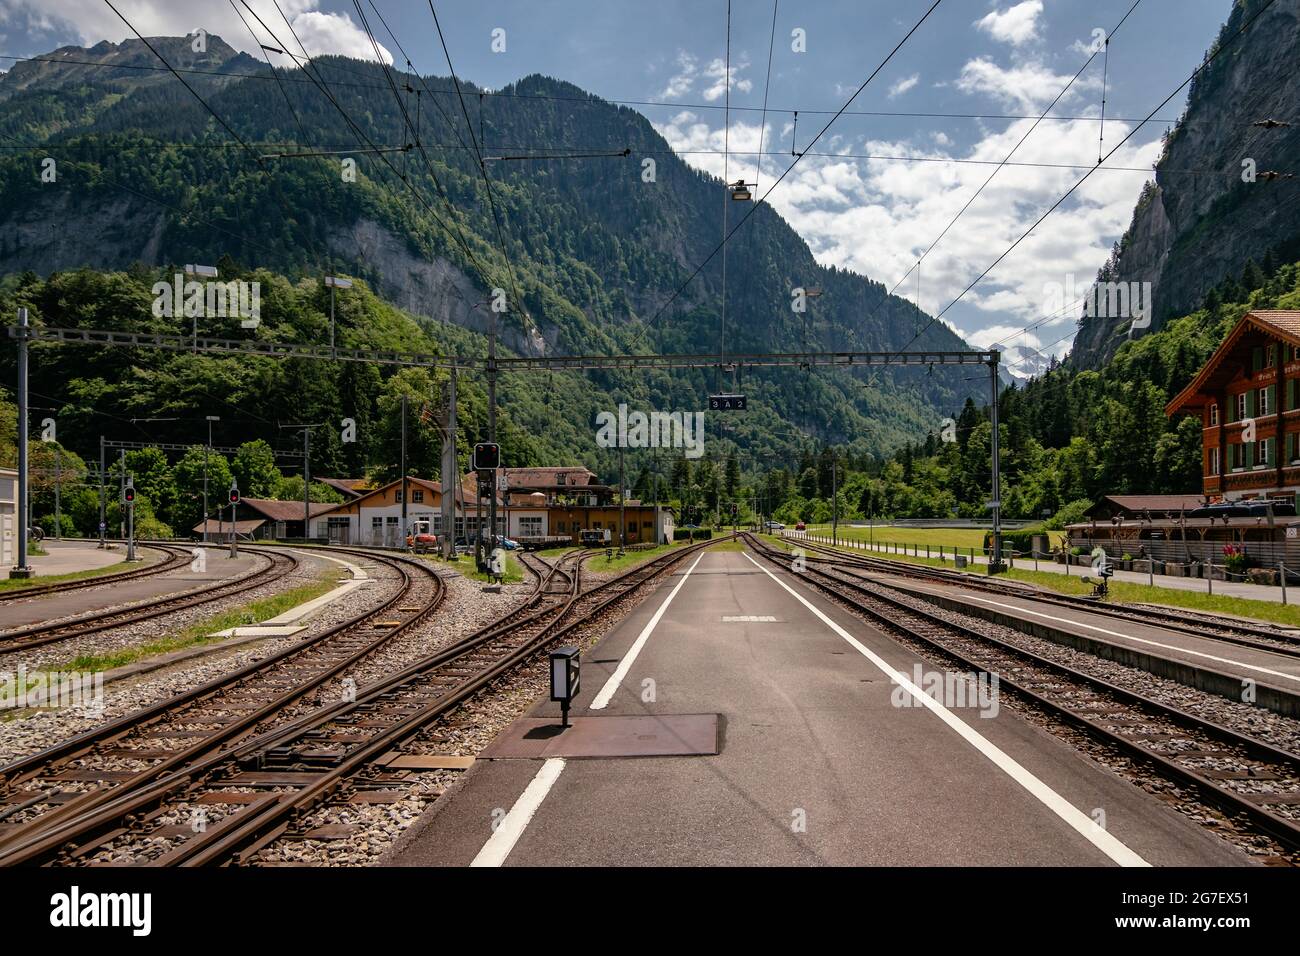 Zweilütschinen - Bernese Oberland Train Station - Swiss Alps in the Summer - Grindelwald, Switzerland - Jungfrau Region Stock Photo